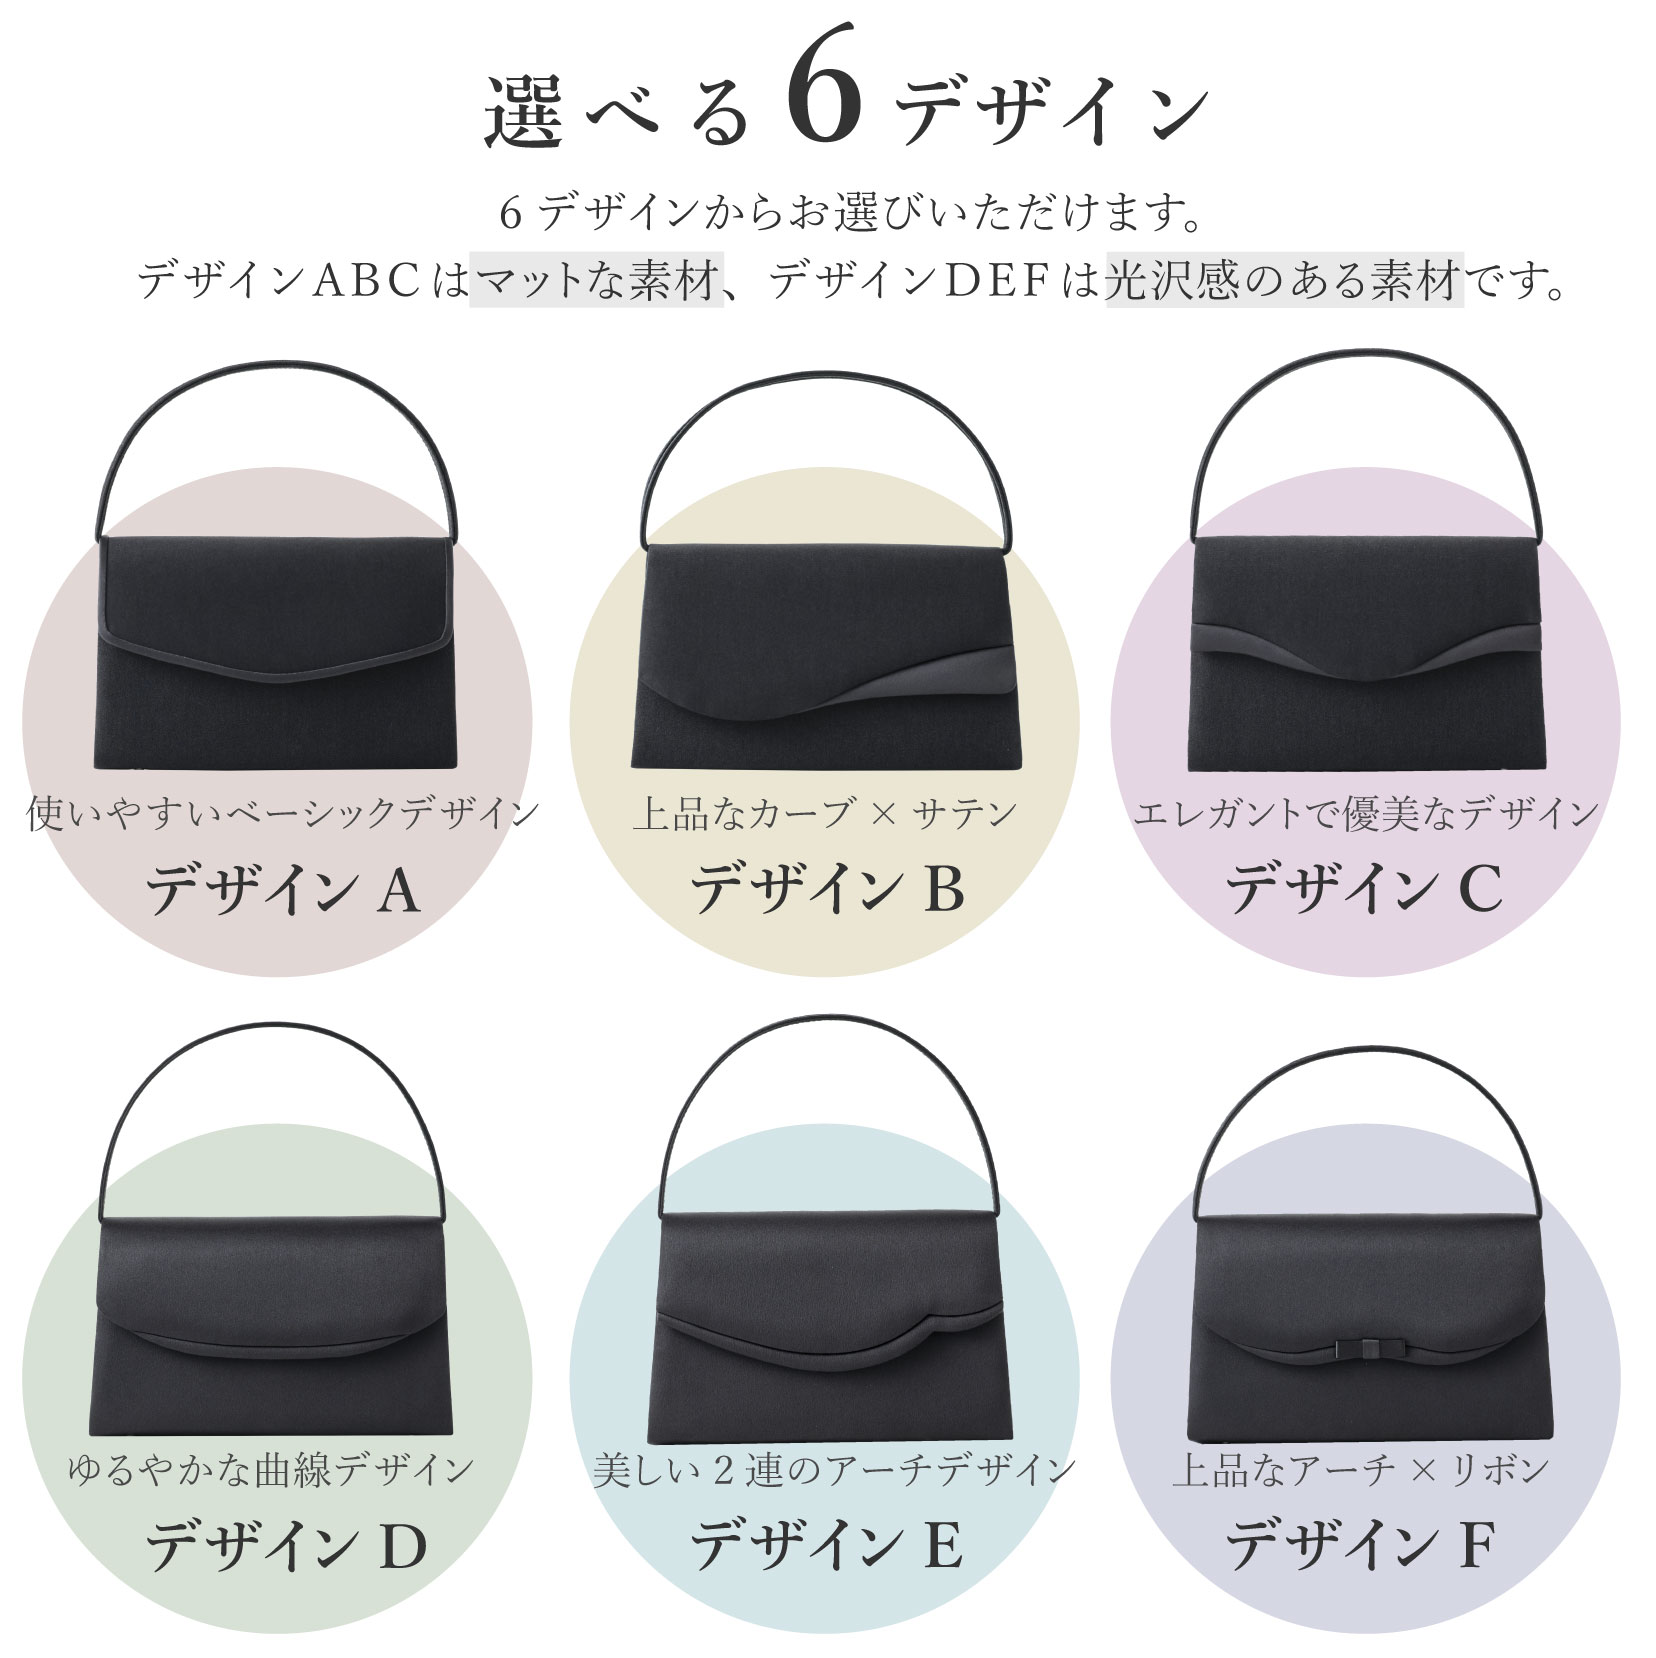  формальный сумка женский чёрный текстильный простой лента 6 дизайн глянец коврик формальный сумка черный черный формальный . тип 